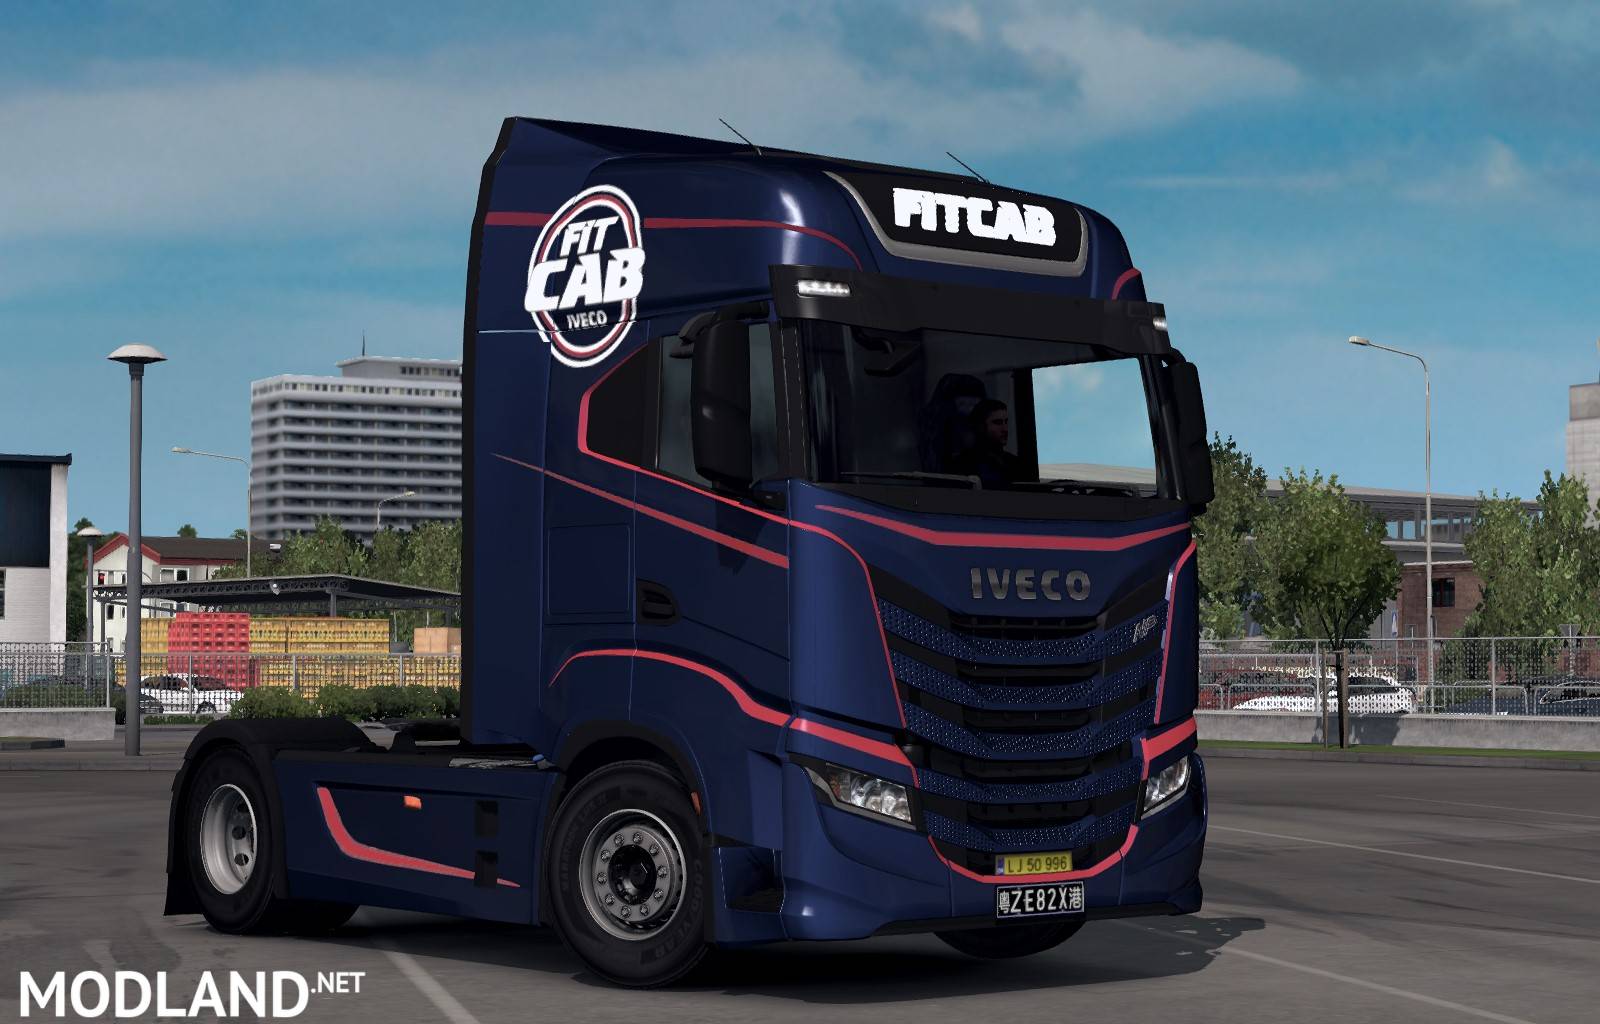 Euro truck simulator моды грузовиков. Грузовики етс 2 Ивеко. Евро трак симулятор 2020. Тягач Iveco етс 2. Iveco s way ETS 2.